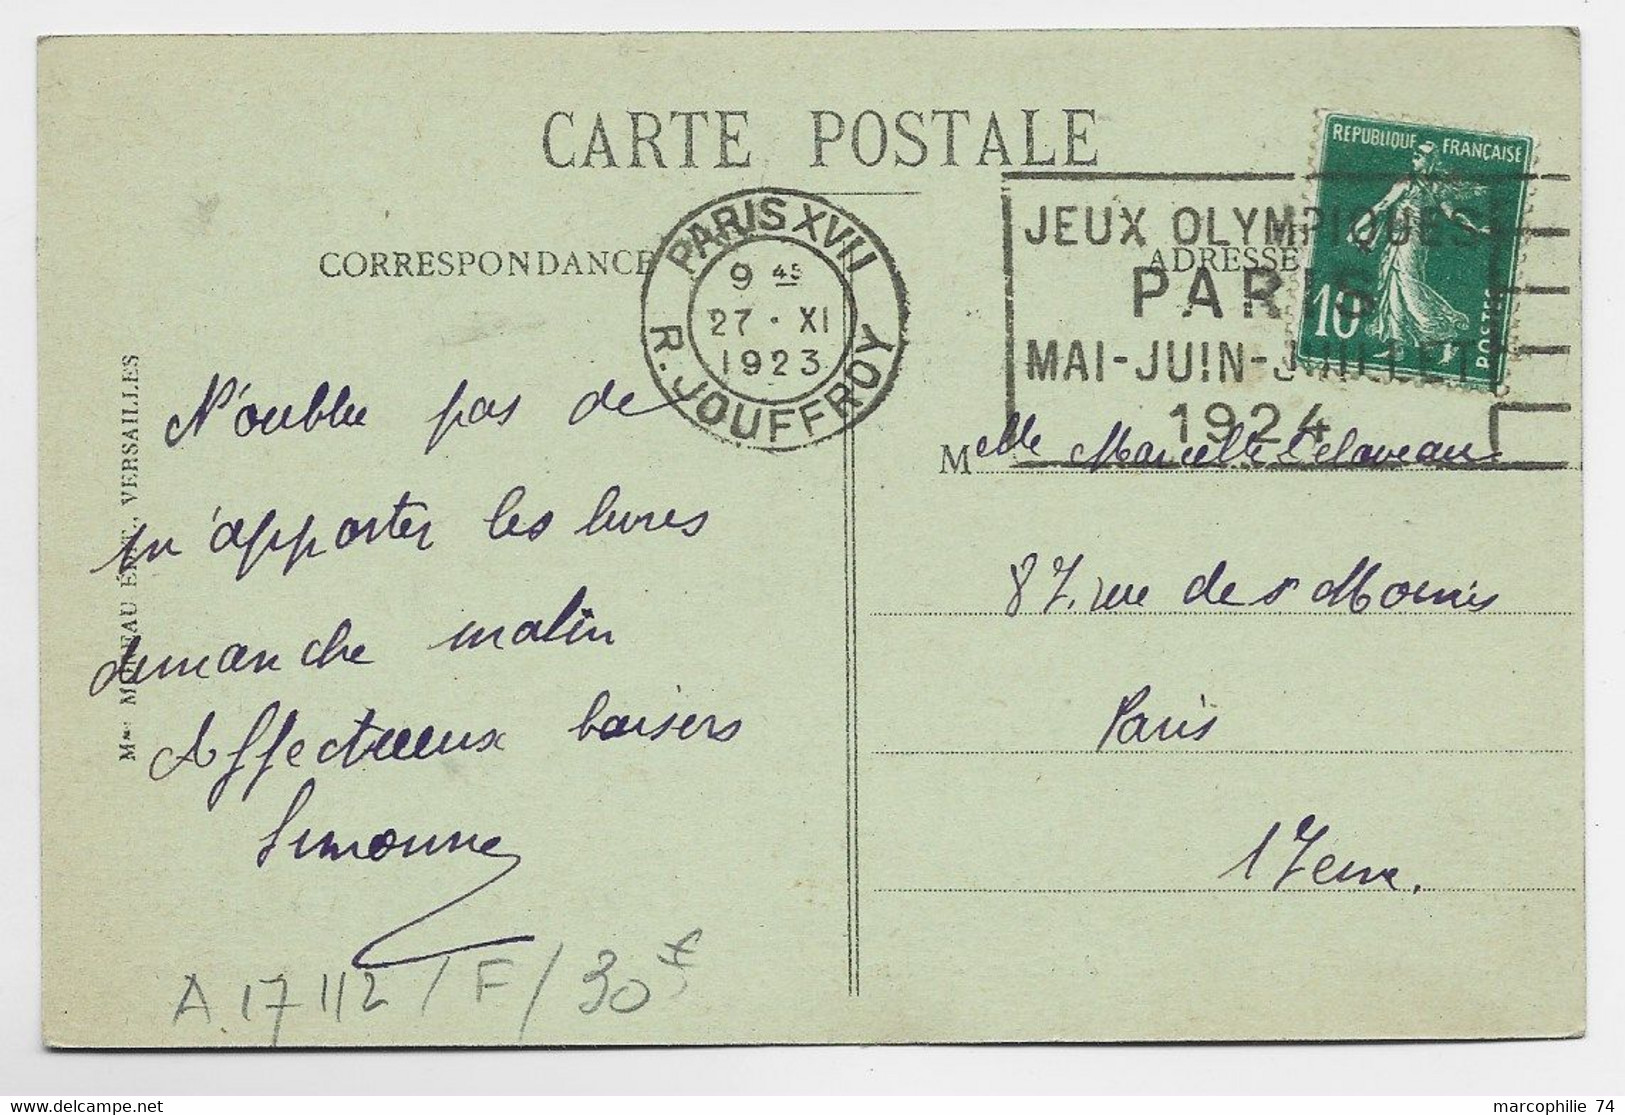 FRANCE SEMEUSE 10C CARTE MEC FLIER JEUX OLYMPIQUES PARIS R JOUFFROY 27.XI.1923 COTE 30€ - Sommer 1924: Paris